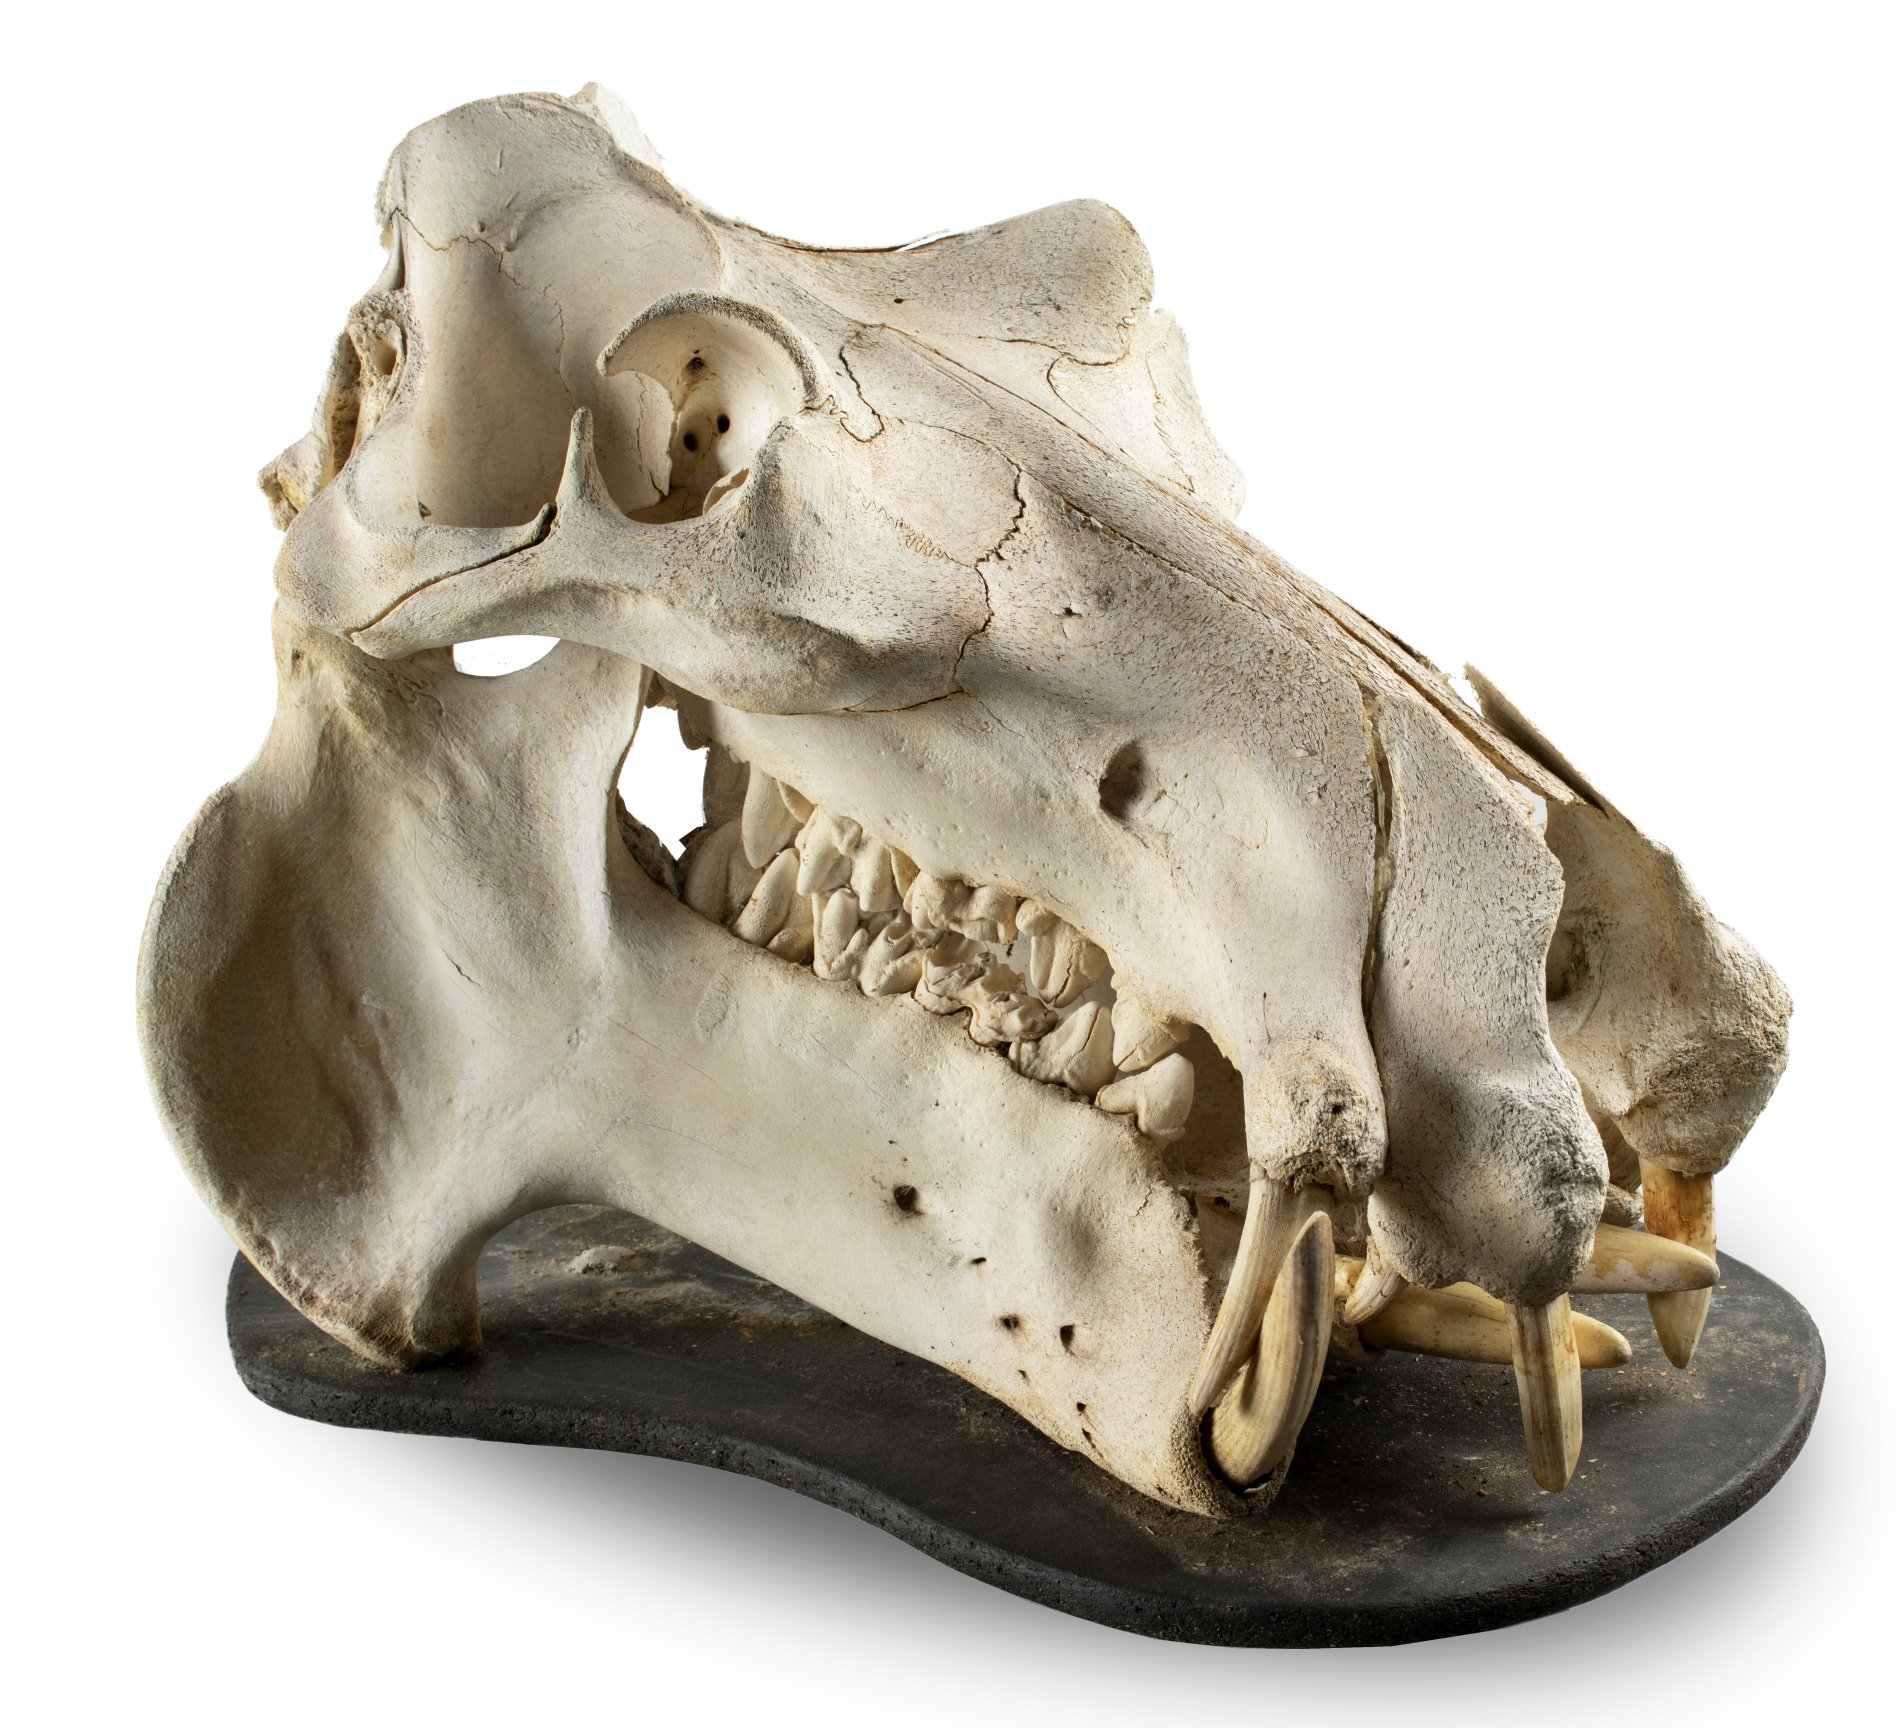 A hippo skull